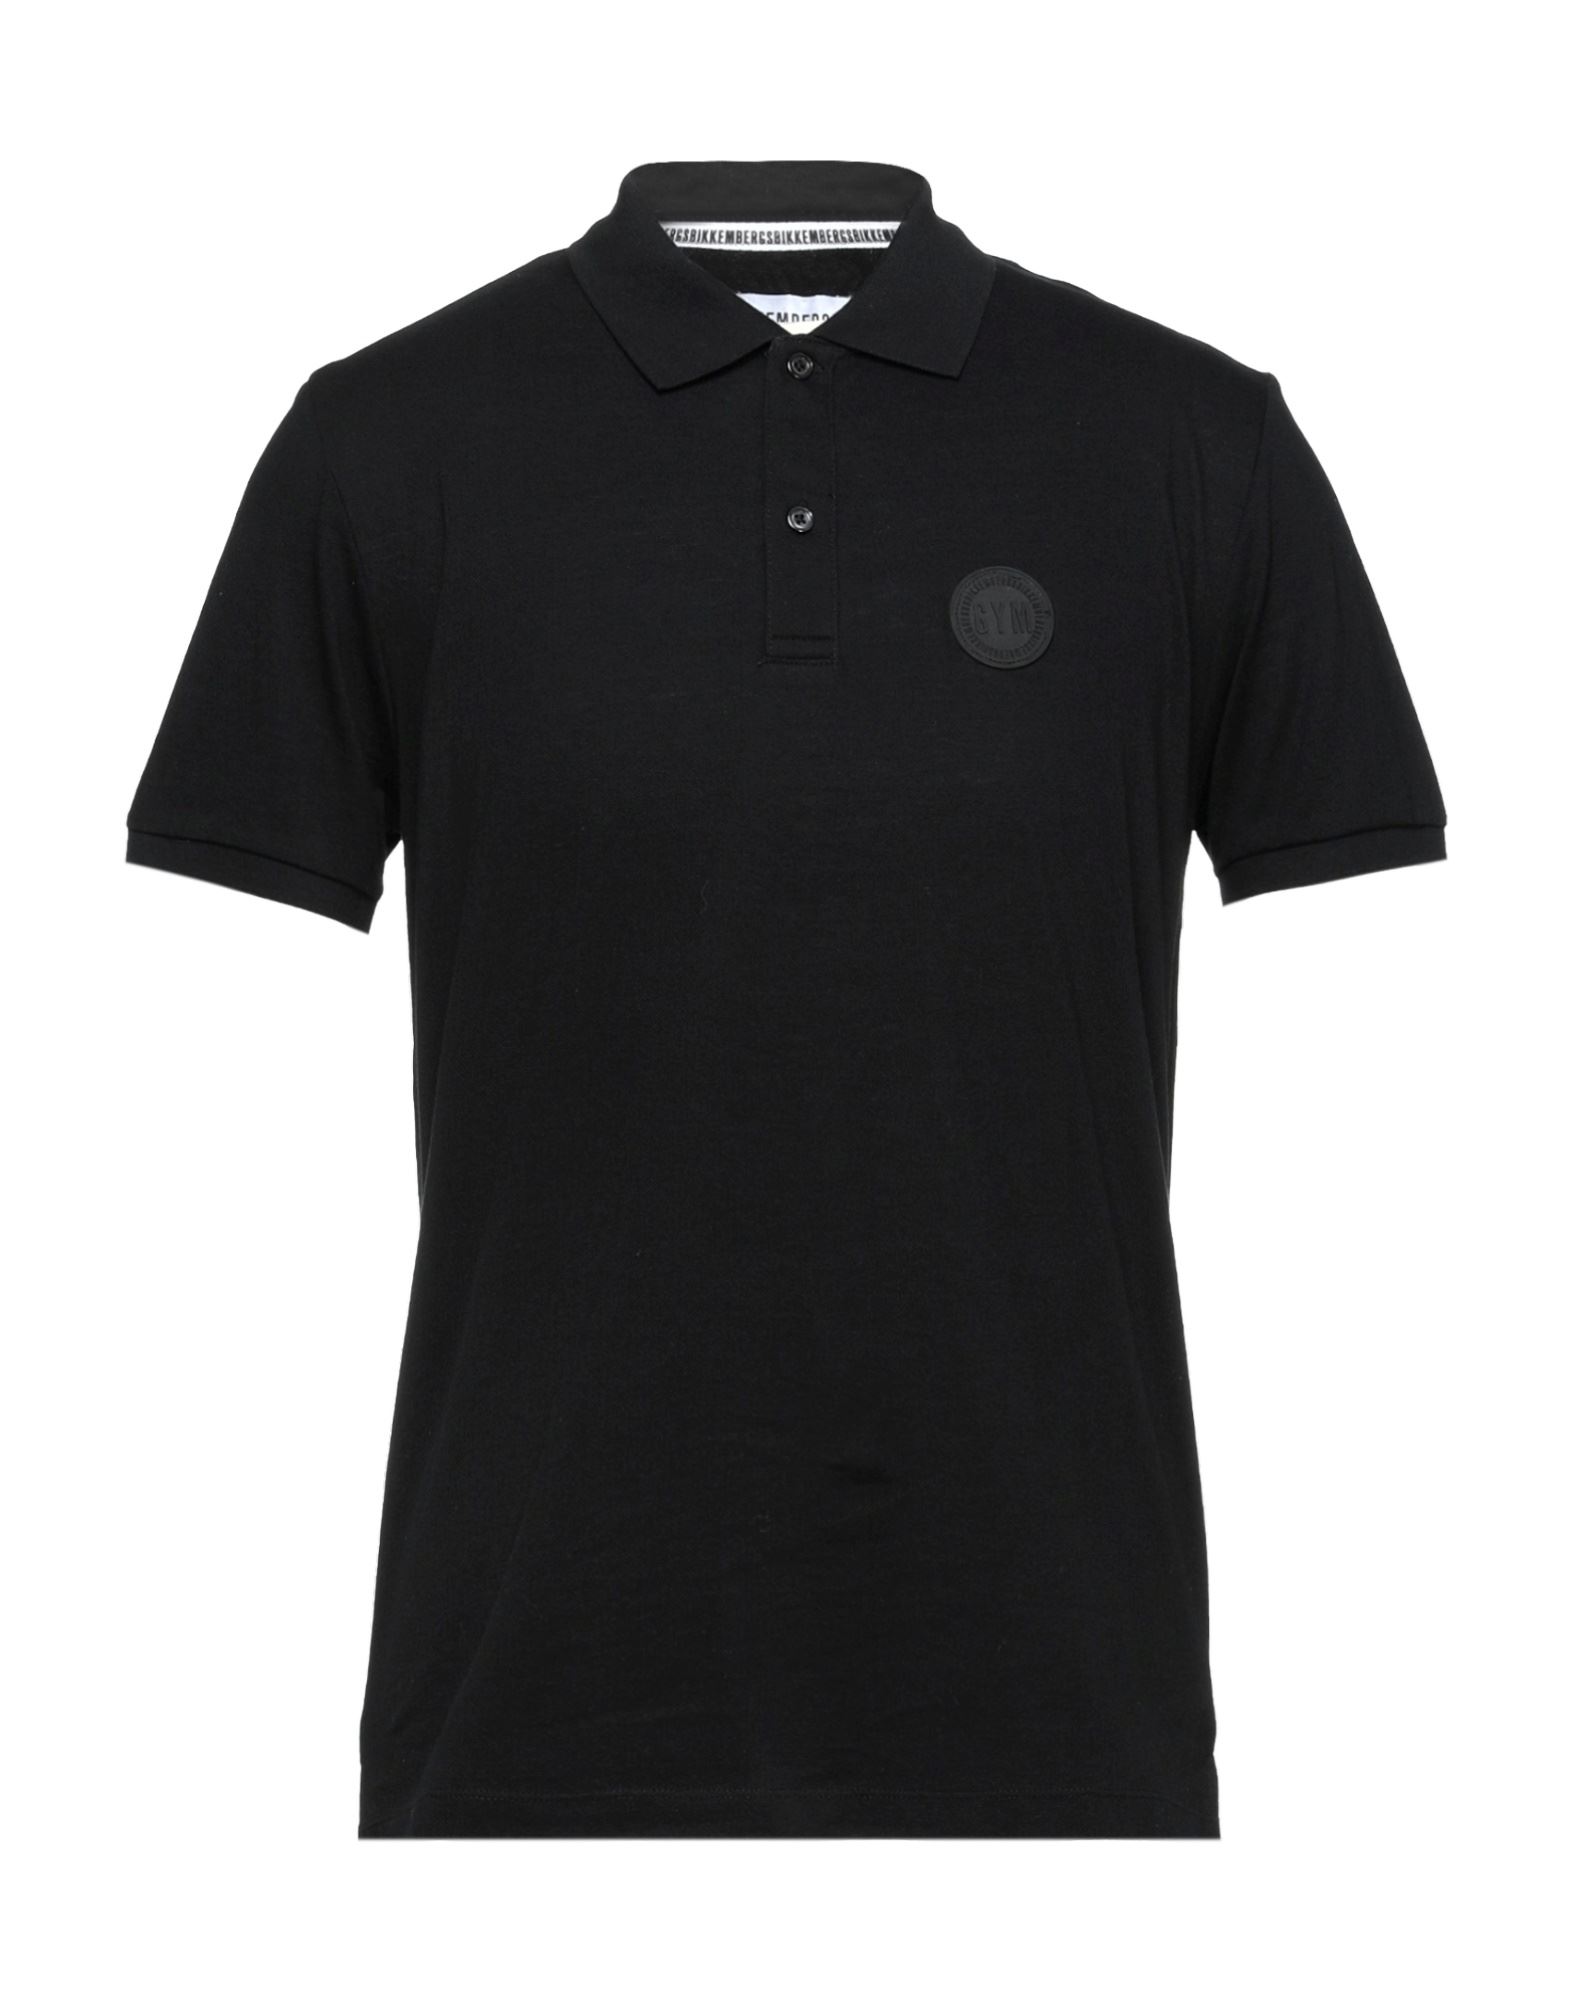 Bikkembergs Man Polo Shirt Black Size L Cotton